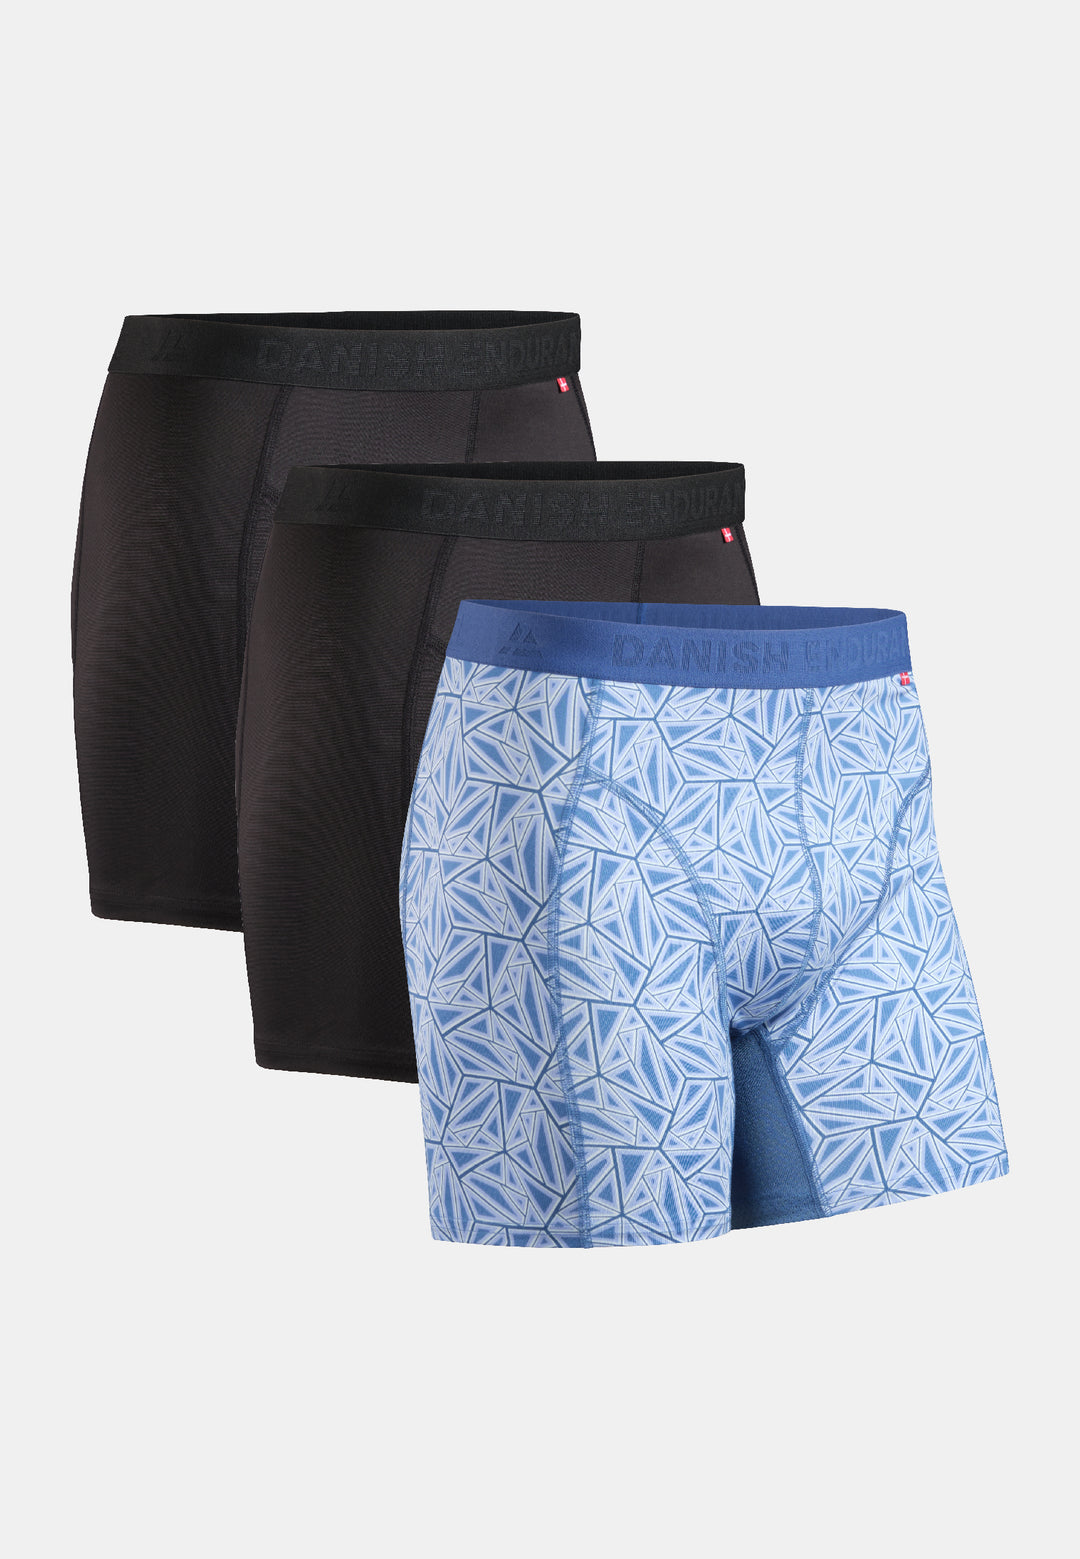 Motorbike Men's Functional Underwear Dainese Quick Dry Boxer - Briefs Shorts